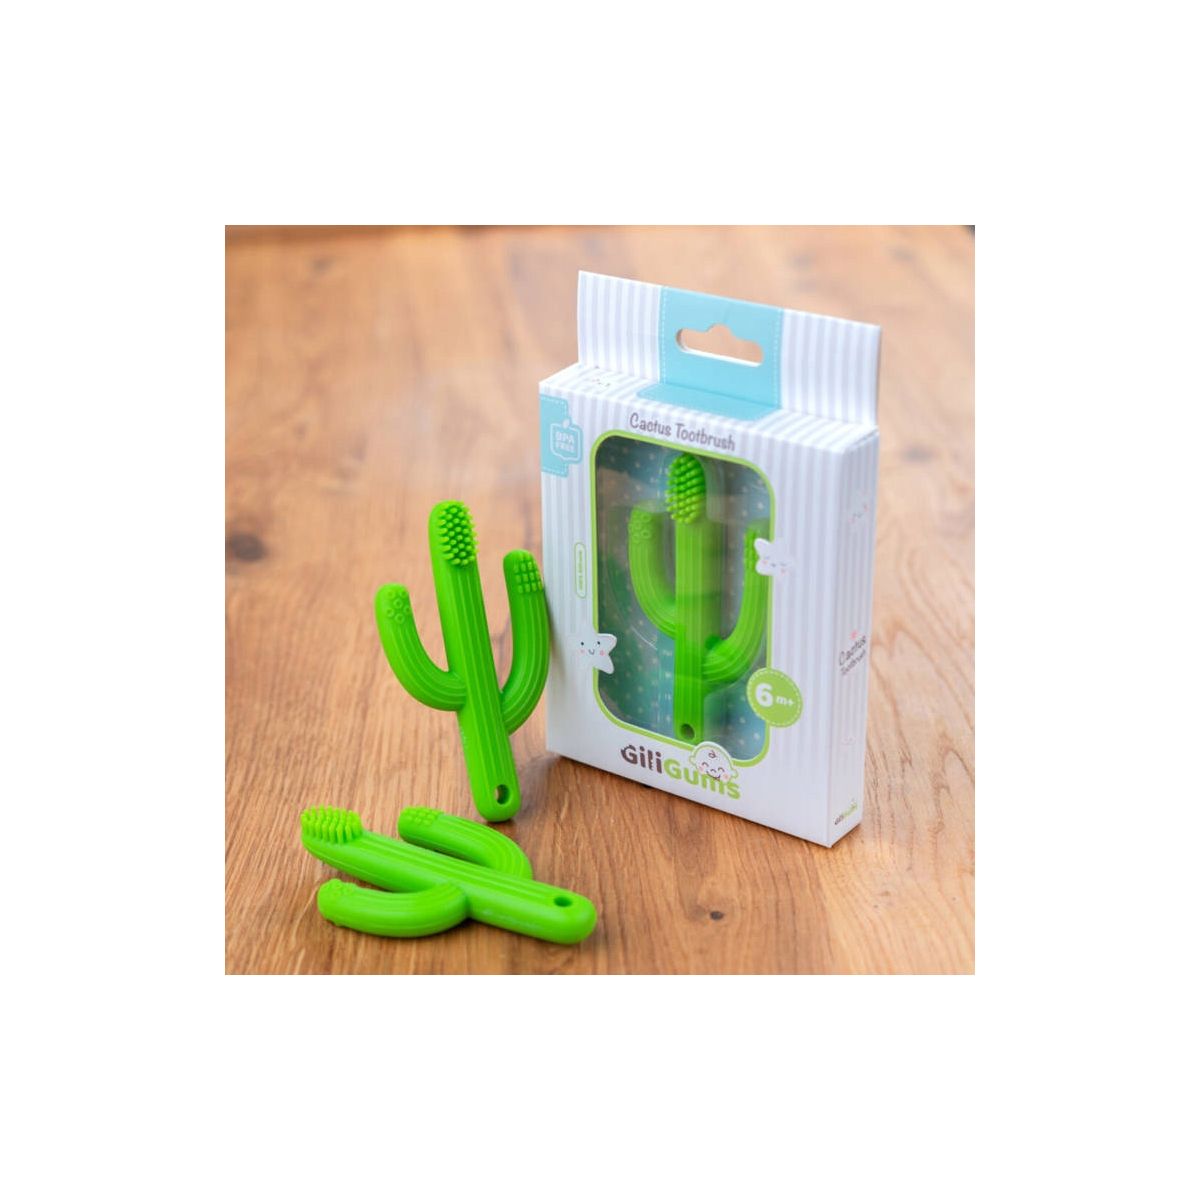 Gryzaczek kaktus zielony Giligums (GG45483)